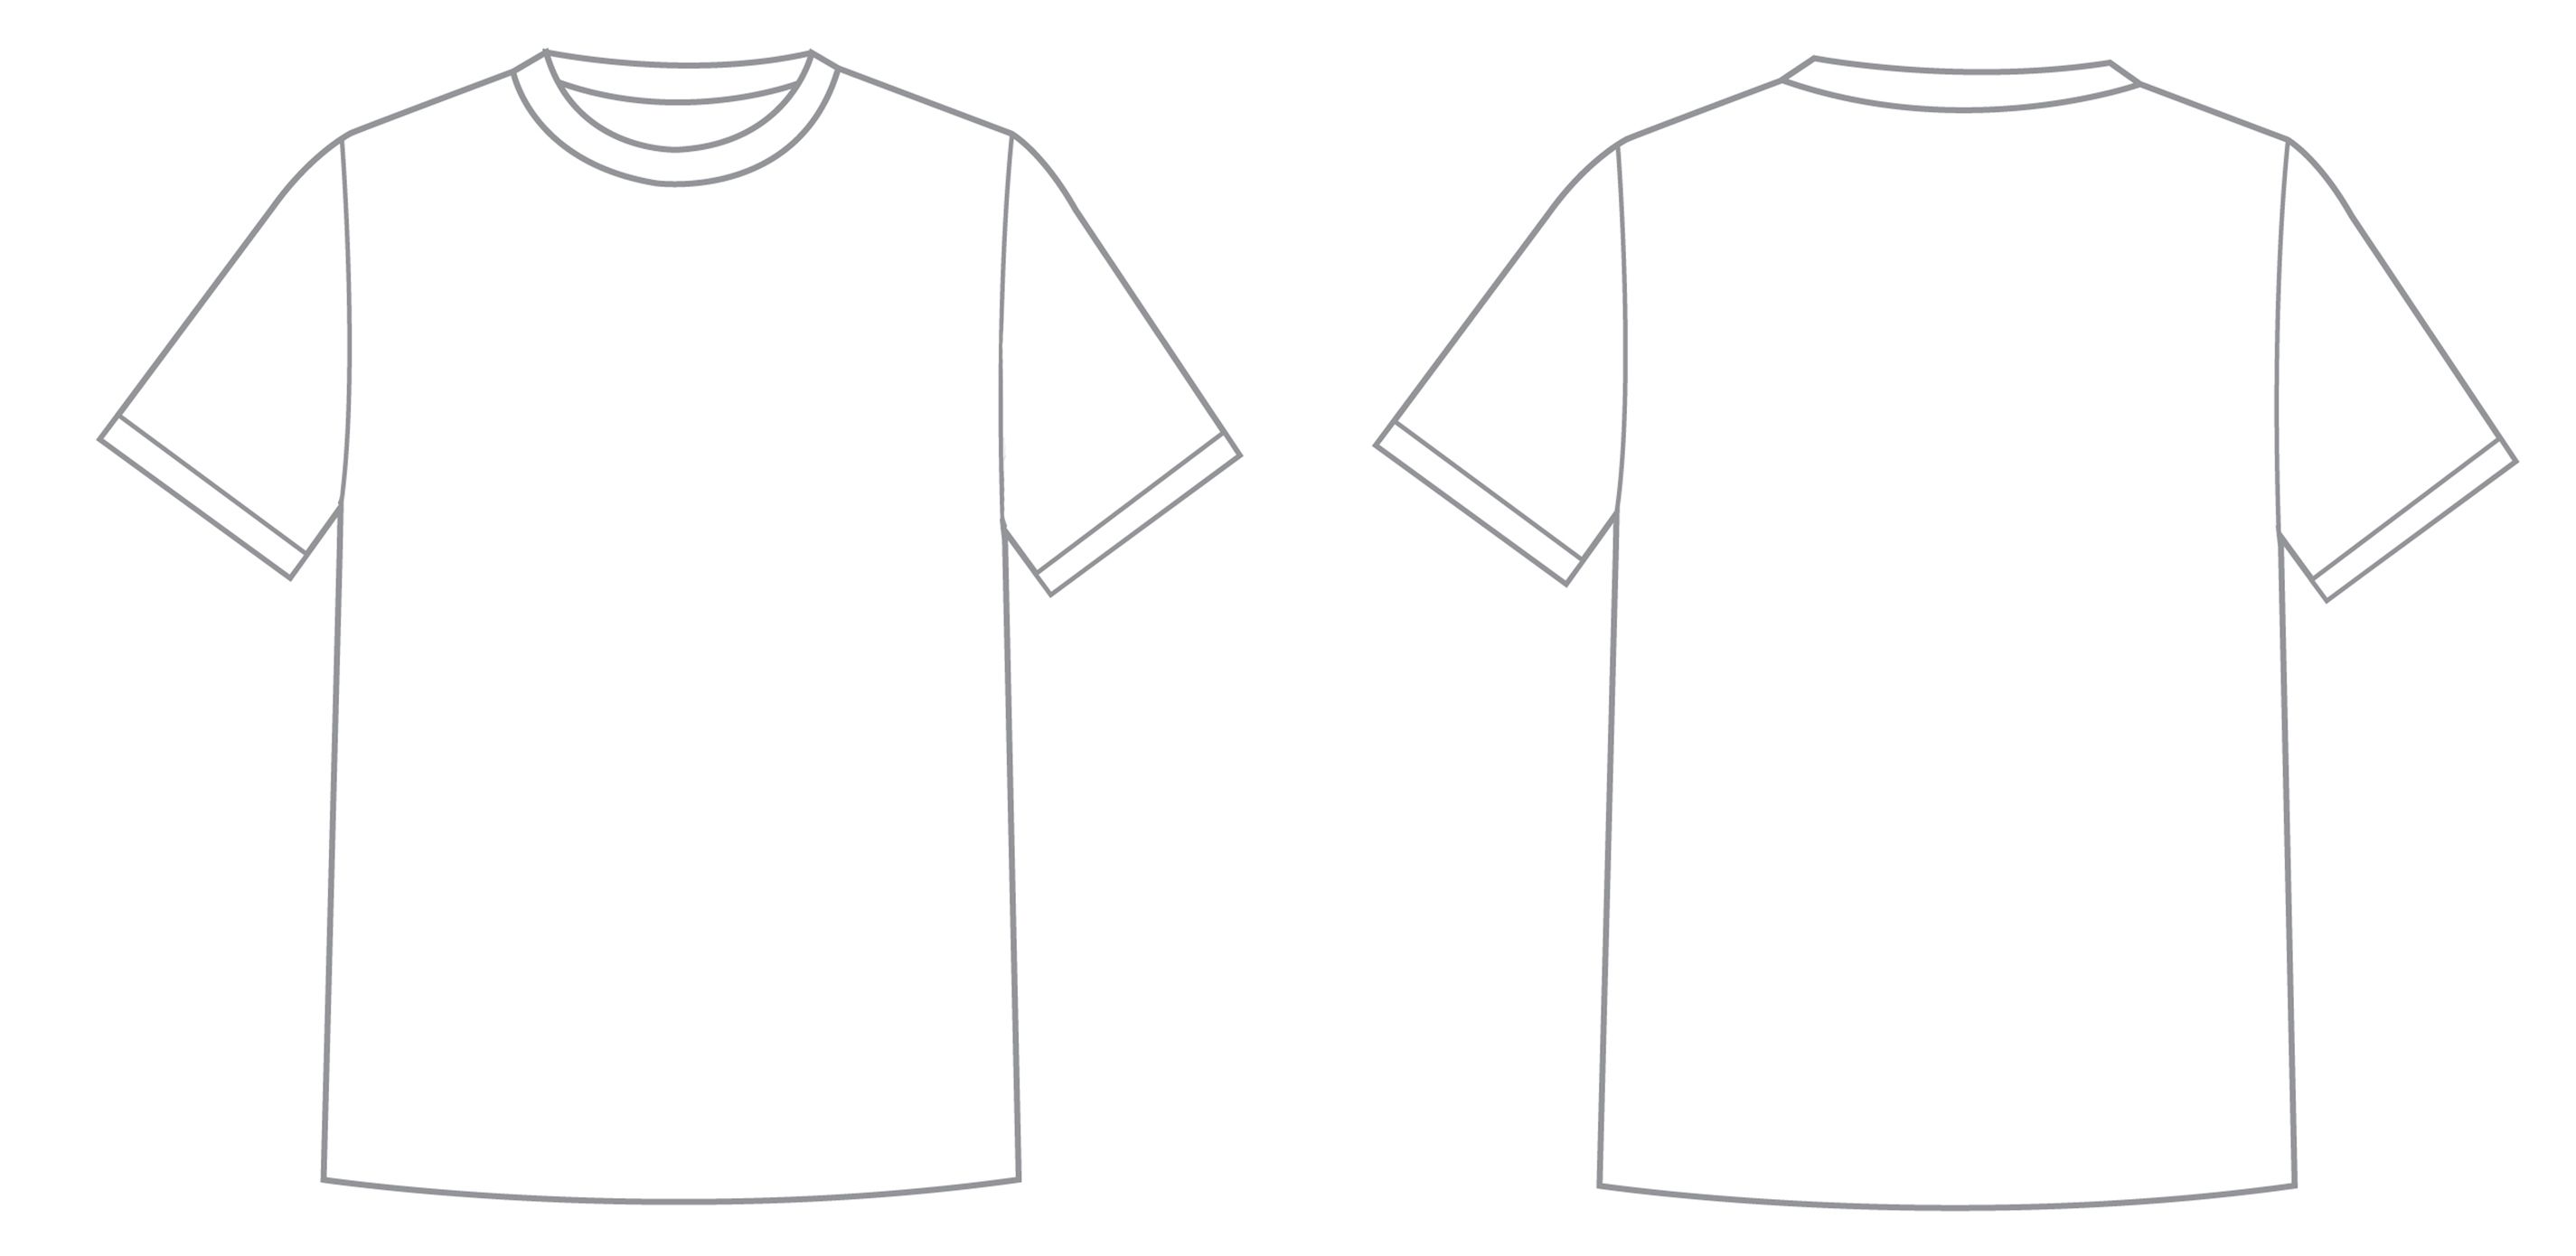 t shirt artwork design template